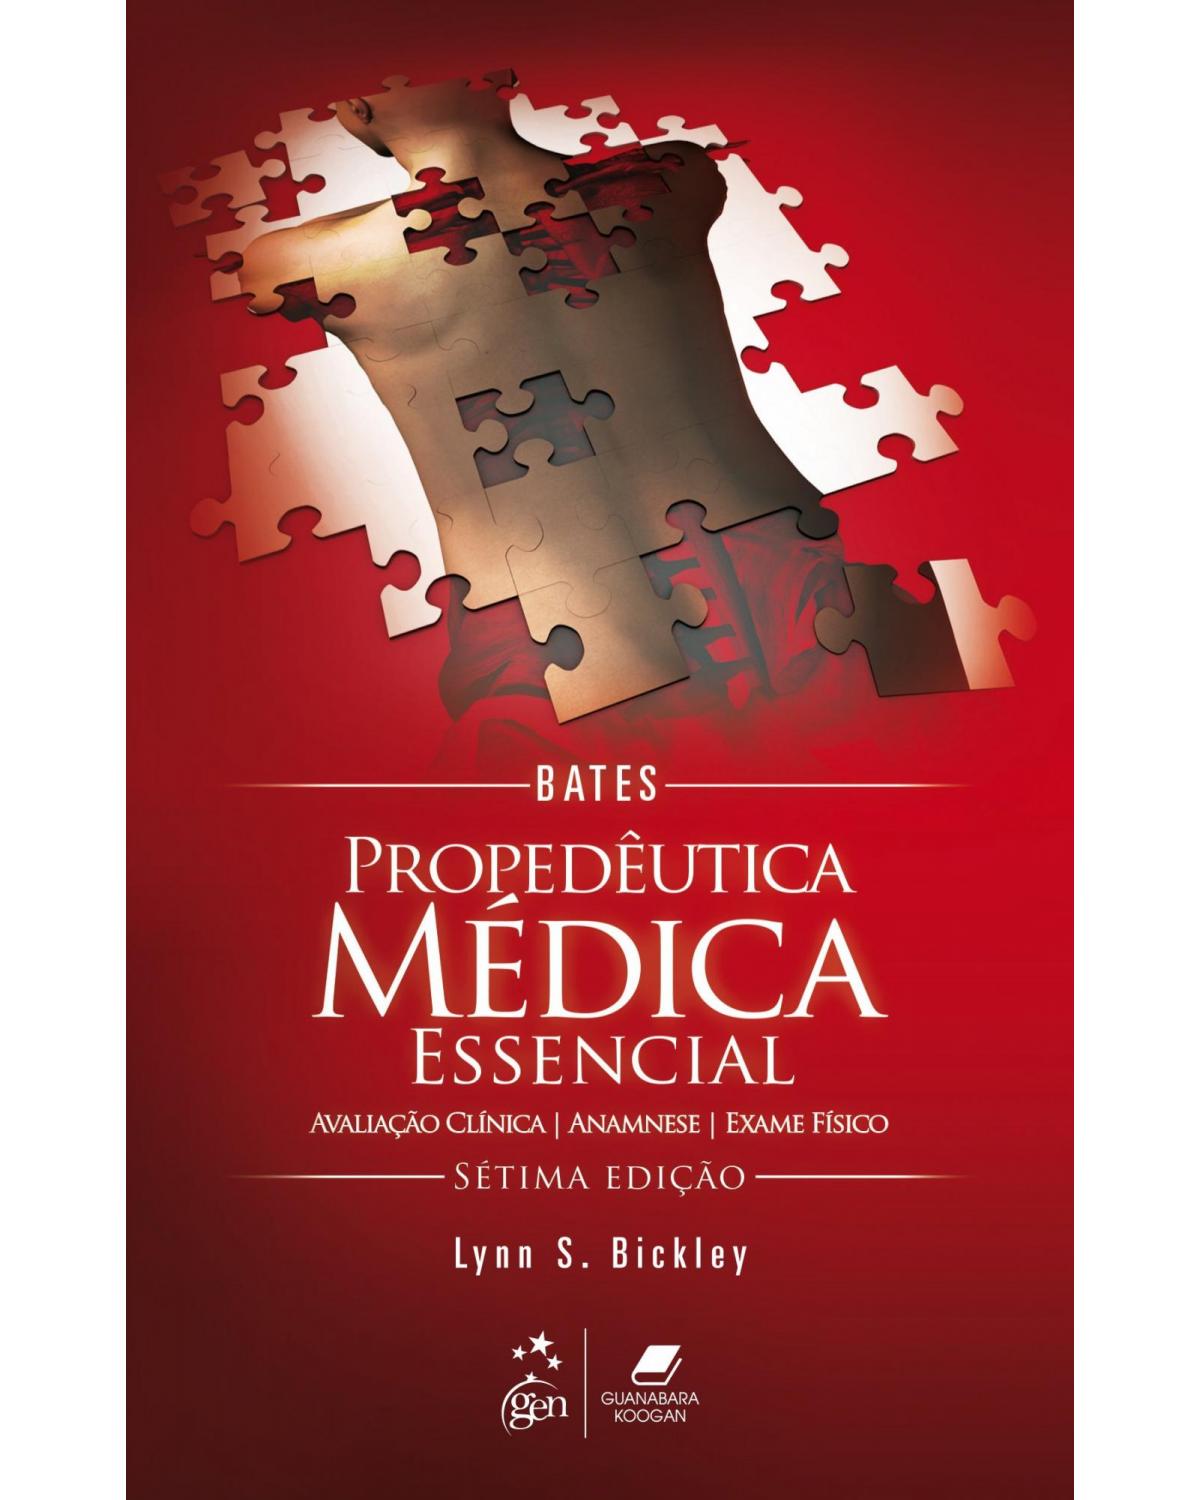 Bates - Propedêutica médica essencial - Avaliação clínica, anamnese, exame físico - 7ª Edição | 2015